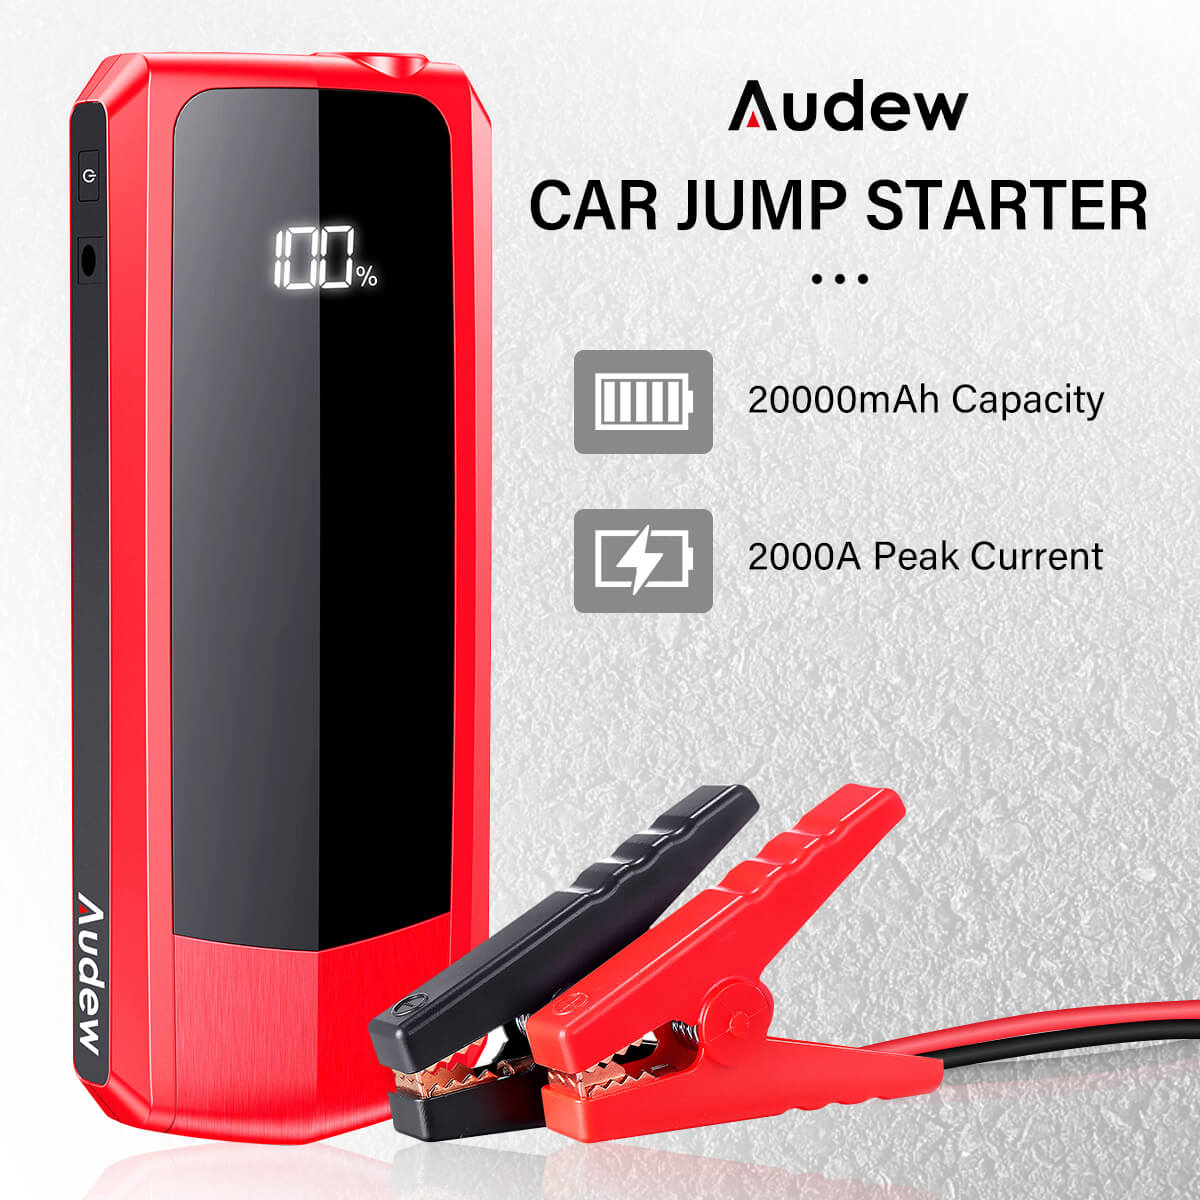 75€ with Coupon for AUDEW 2000A 20000mAh Car Jump Starter Power Bank - EU 🇪🇺 - BANGGOOD